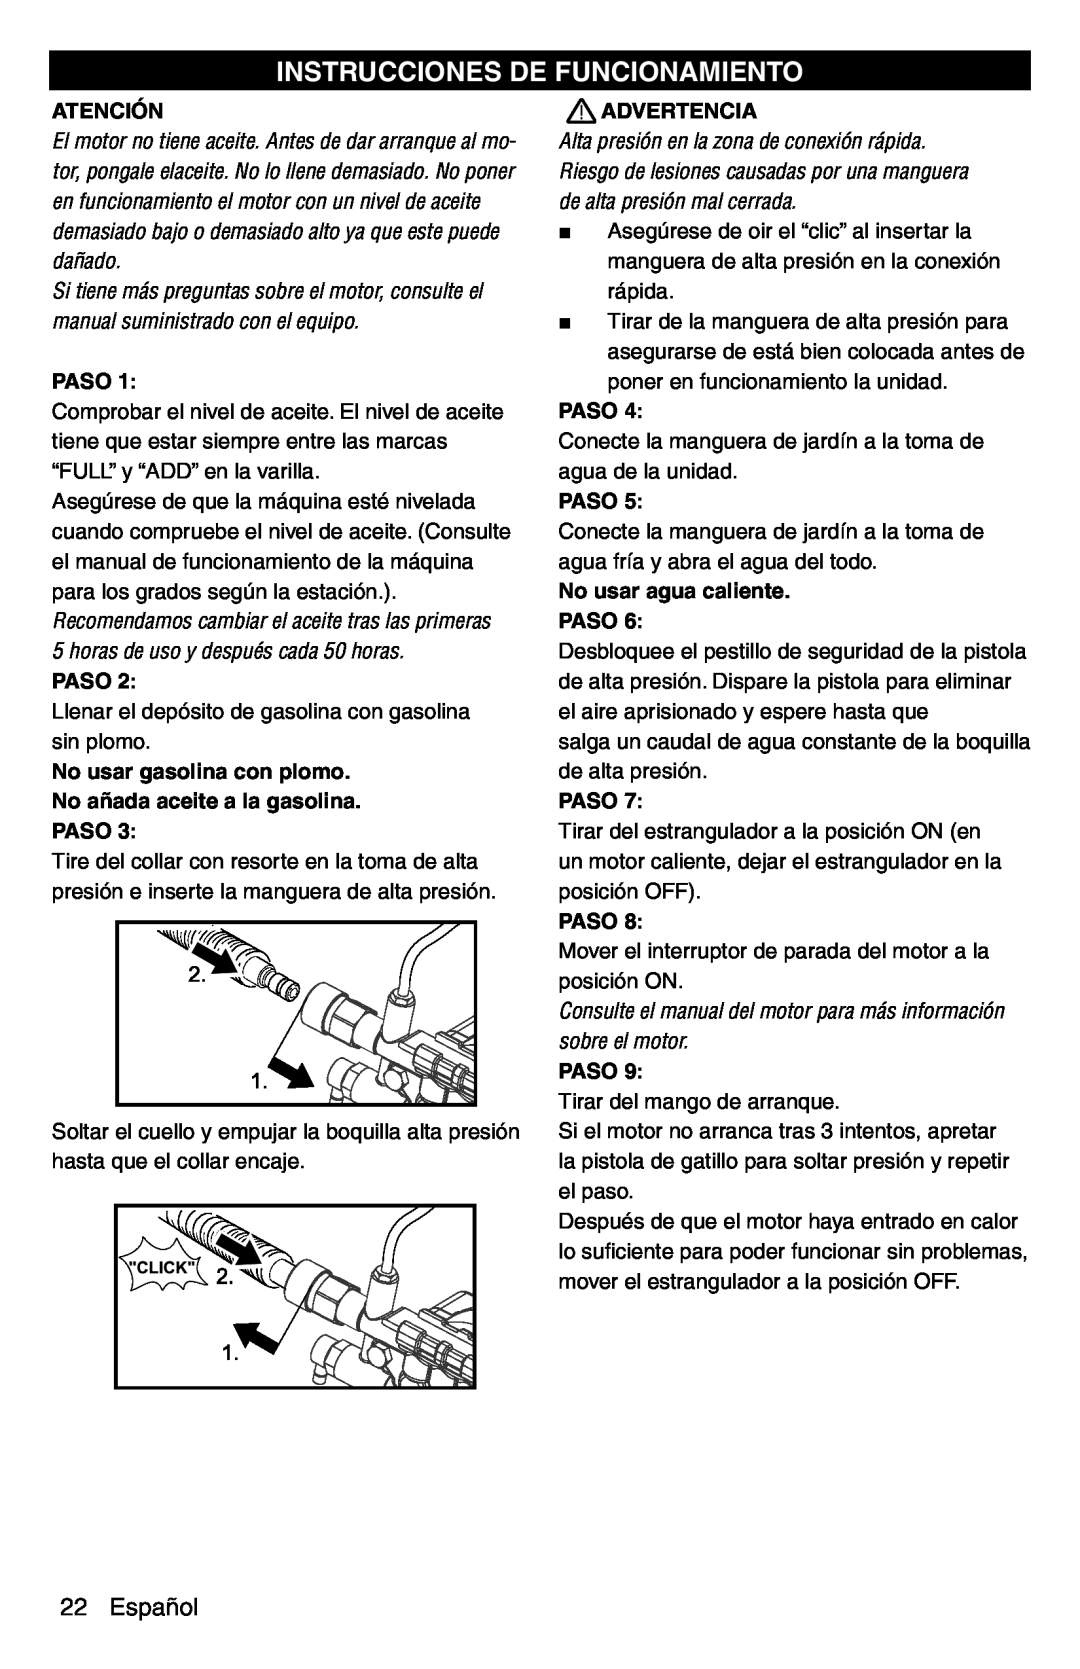 Karcher G 2600 PC manual Instrucciones De Funcionamiento, Español, Atención, No usar agua caliente PASO, Paso, Advertencia 